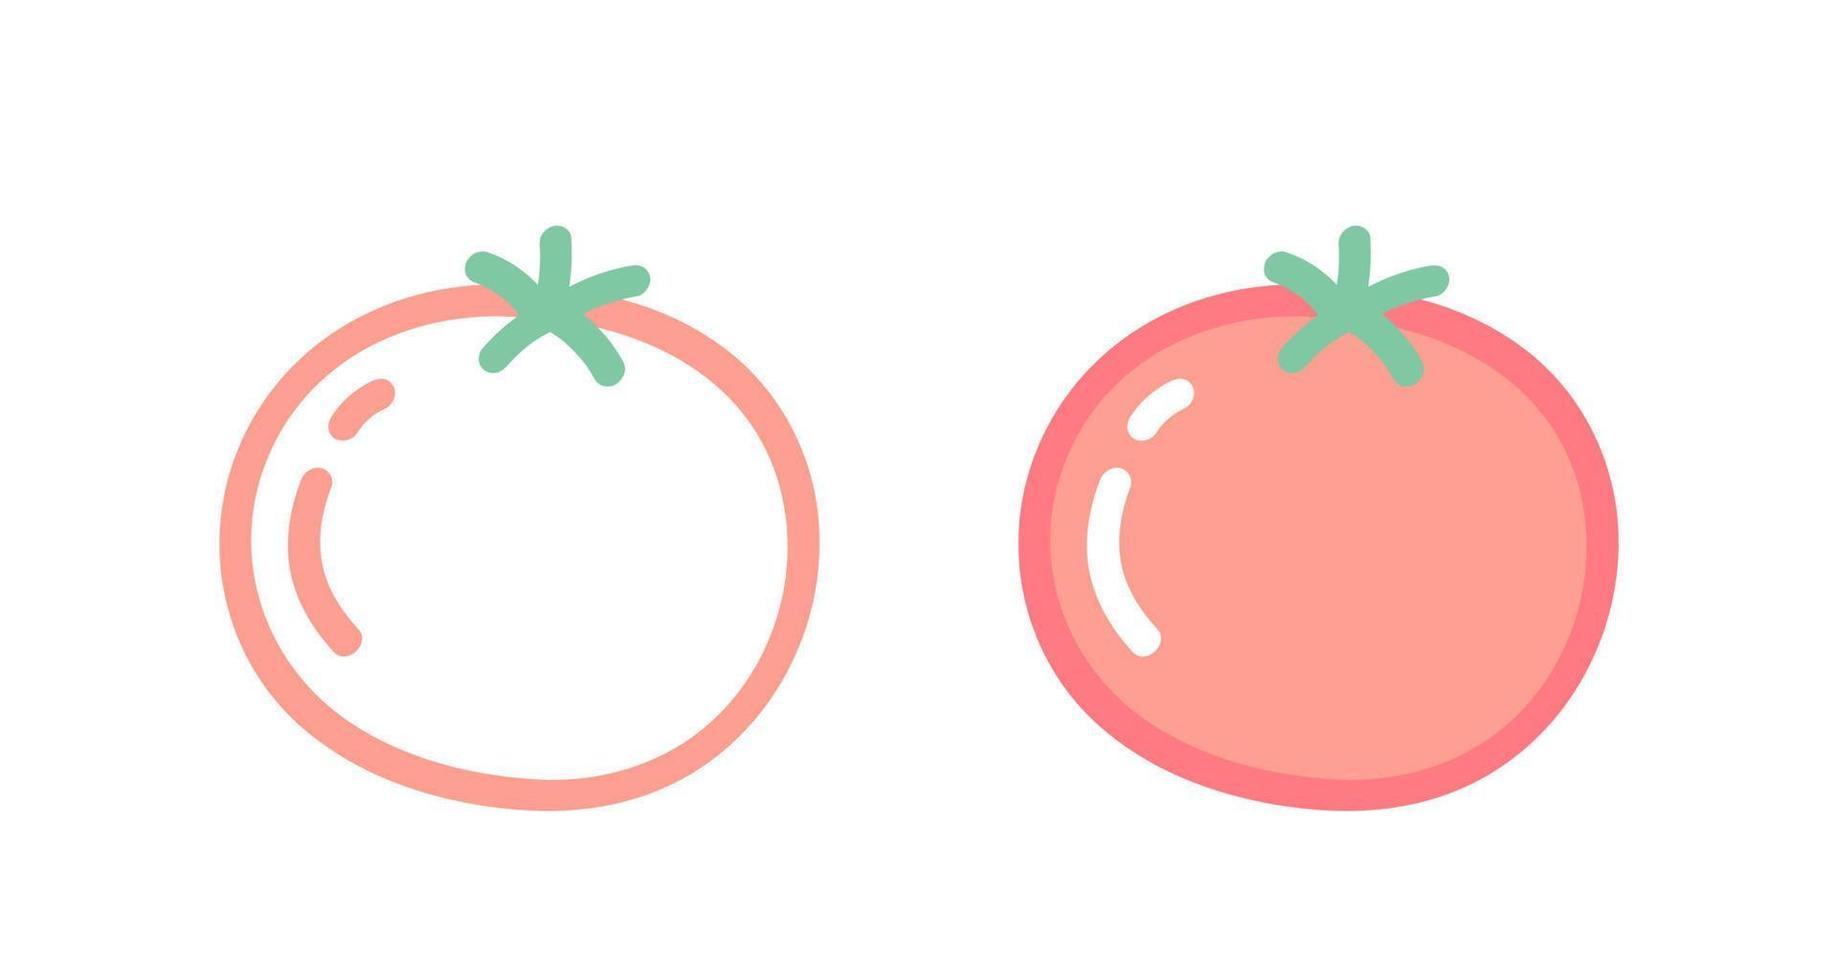 vetor definido ícones de tomate. ilustração em vetor de tomate. vegetais de desenho à mão.